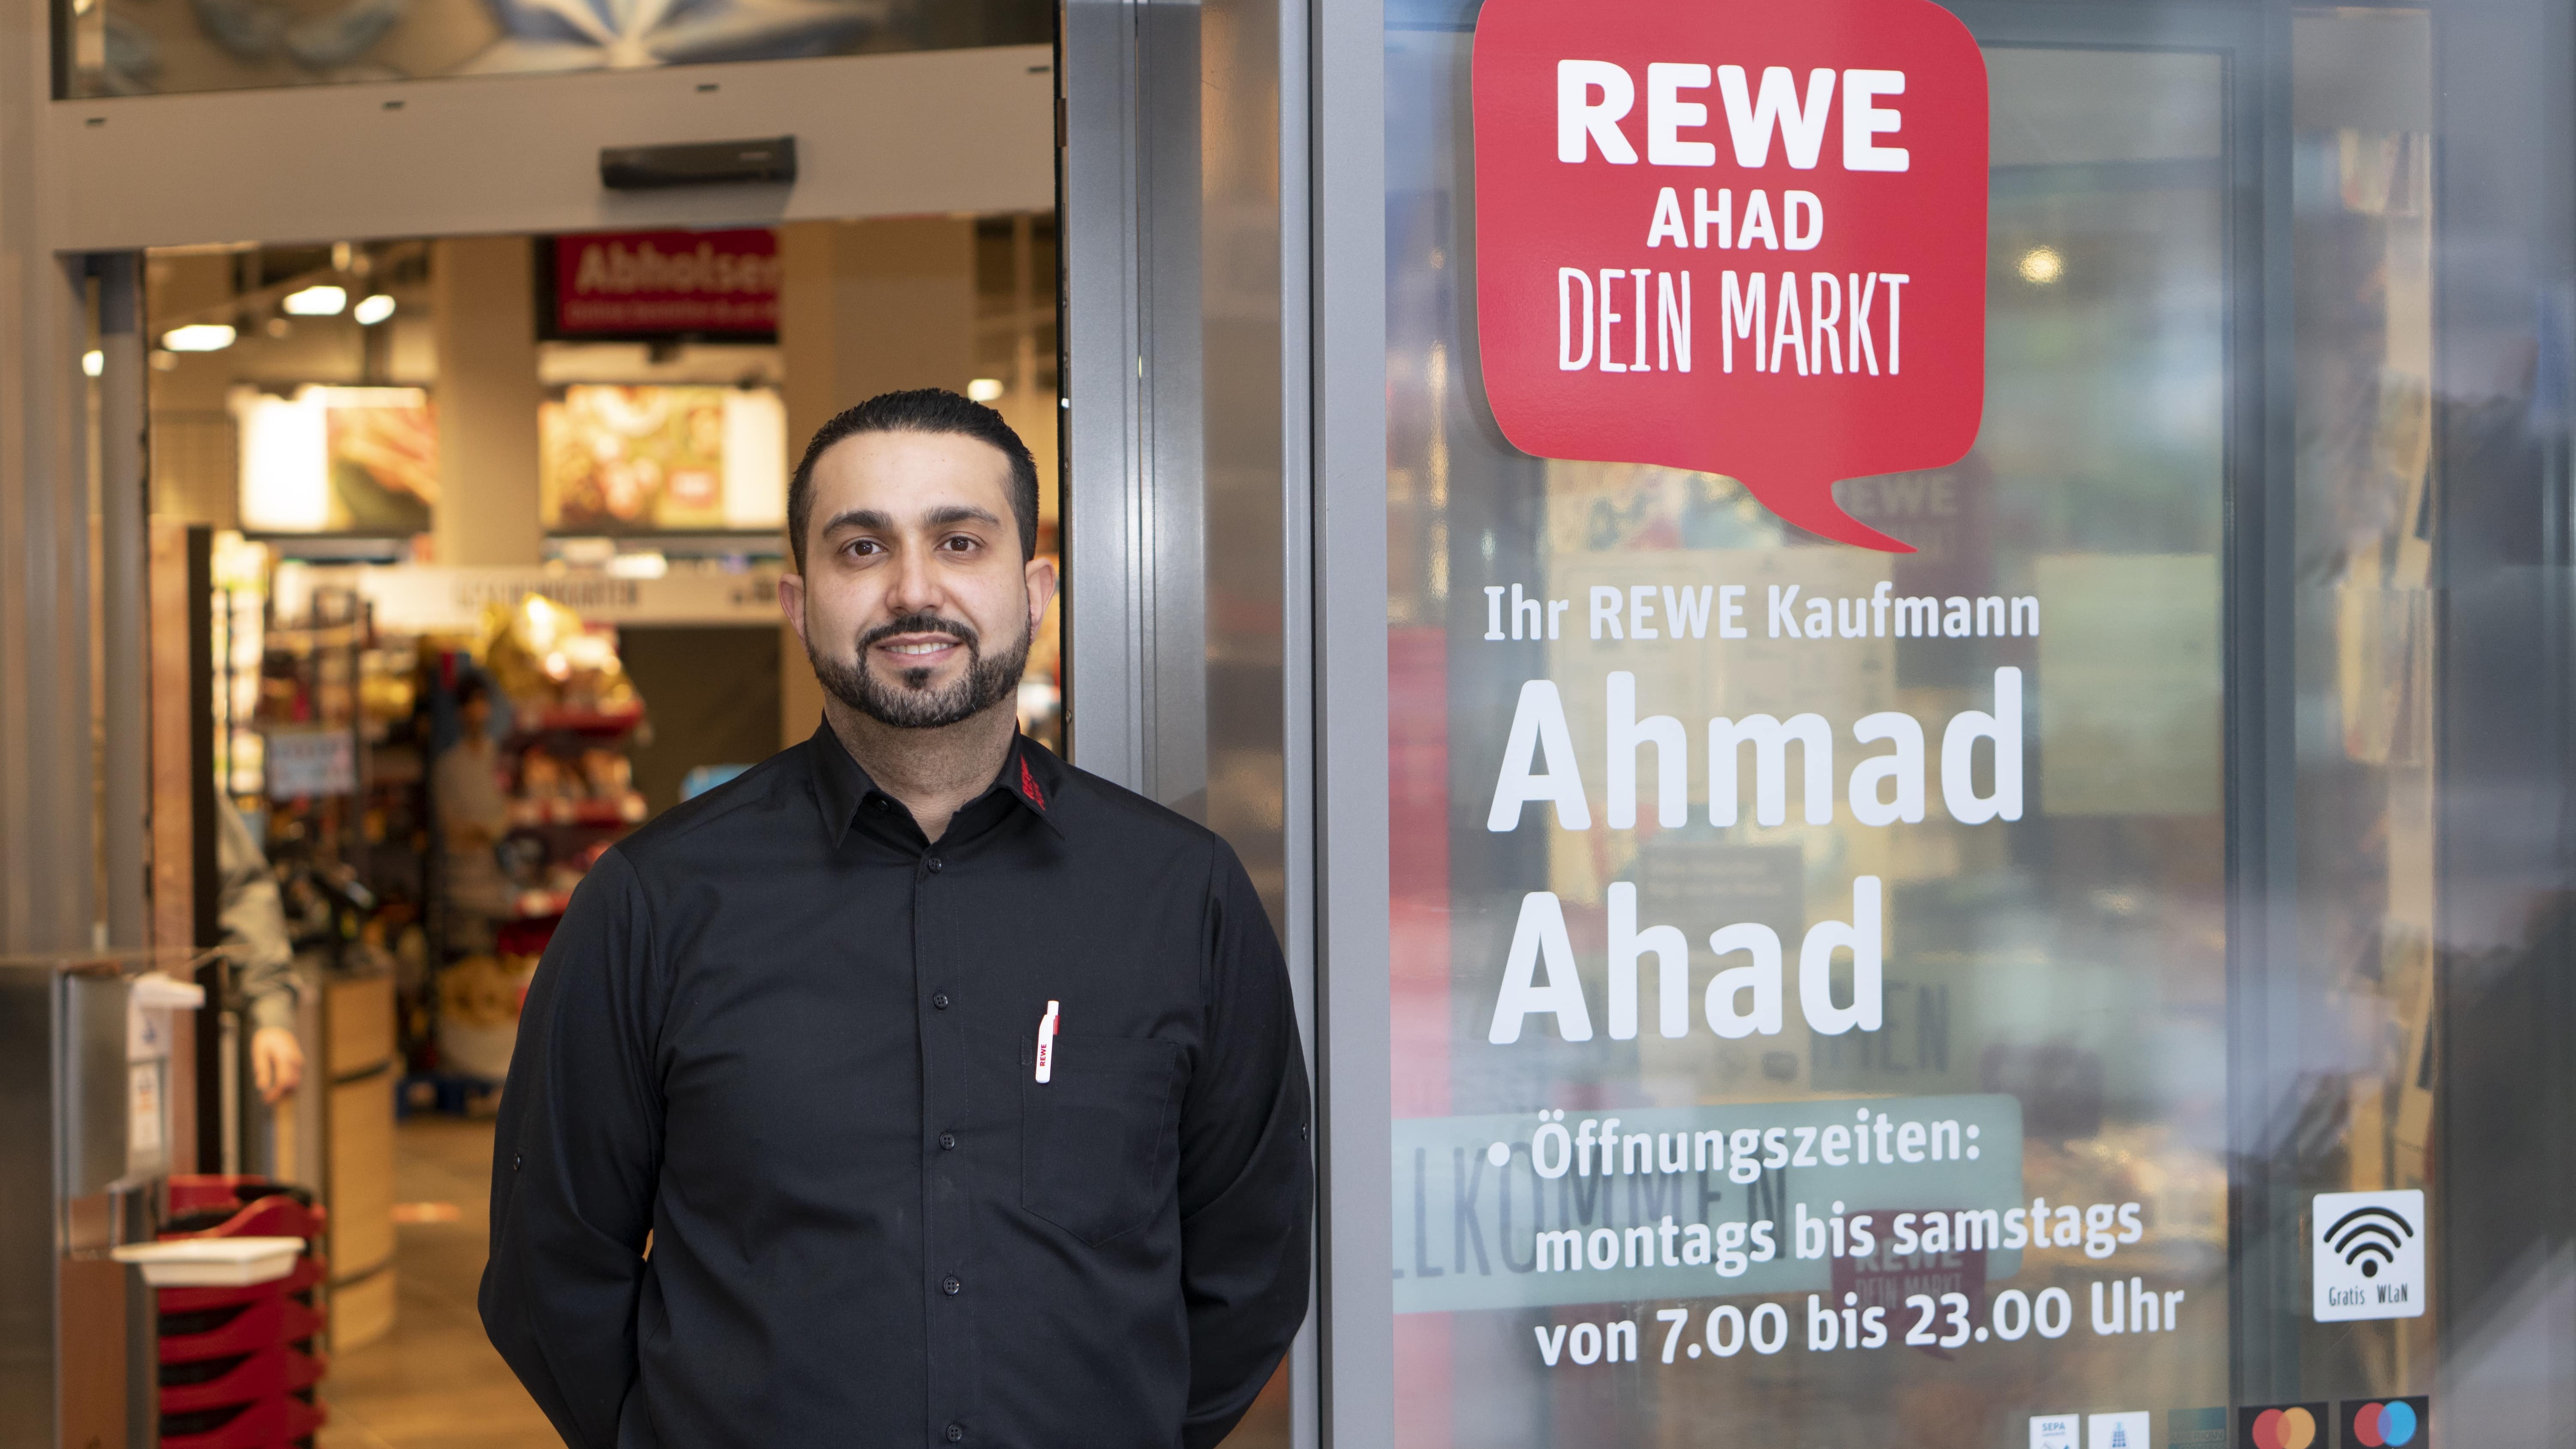 Bild 2 REWE Ahmad Ahad in Hamburg